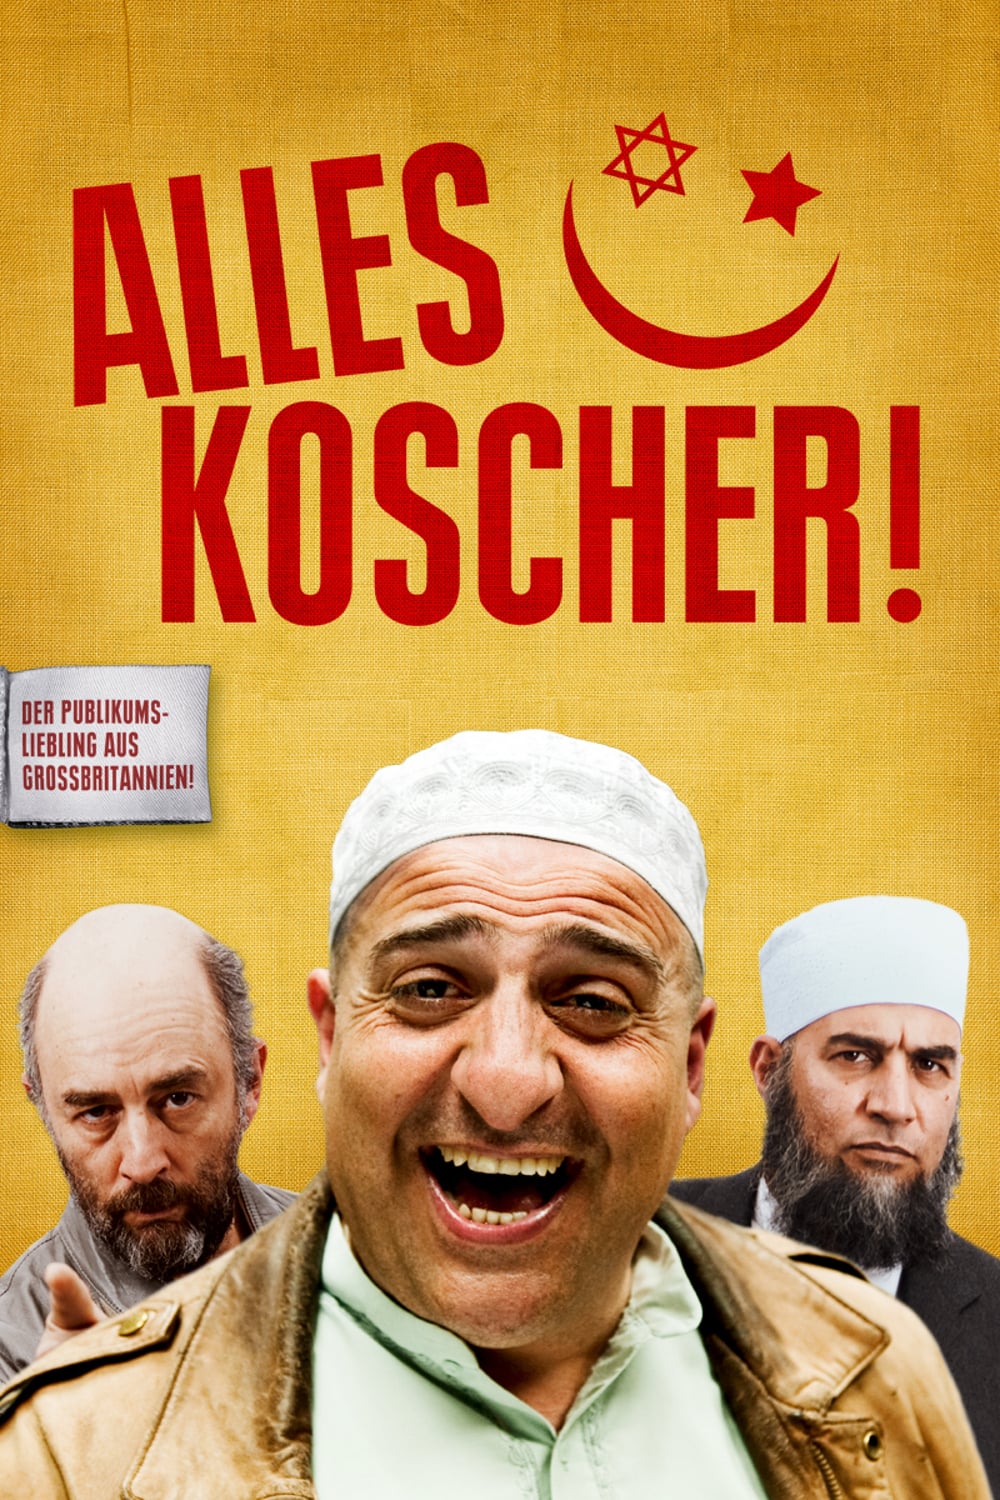 Plakat von "Alles Koscher!"